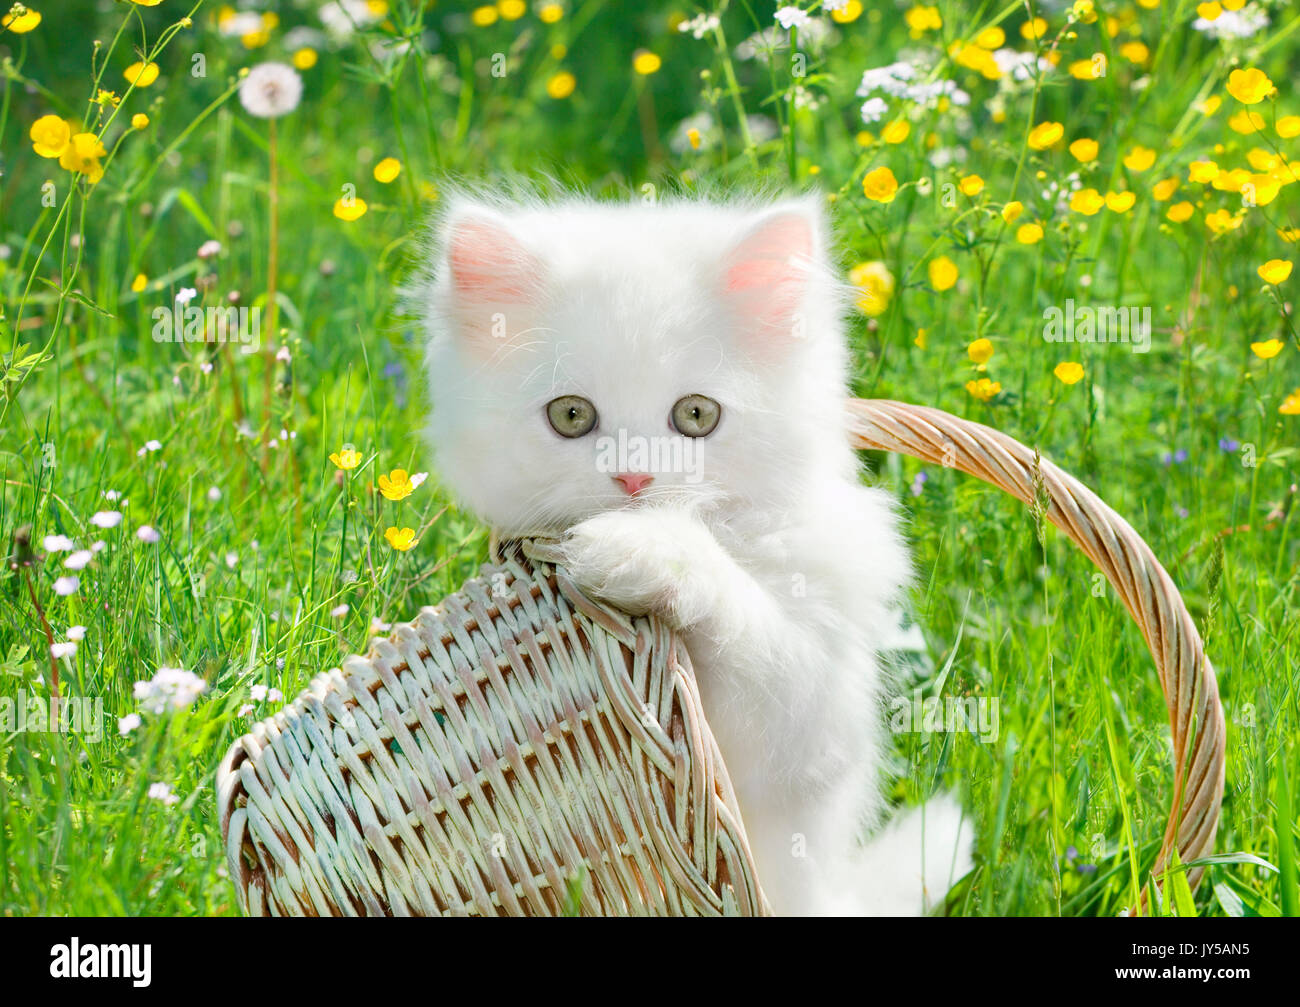 Hãy xem một chú mèo trắng nhỏ con cực dễ thương trong ảnh này. Chú này đang đáng yêu thế nào đó vì nó đang chơi đùa một mình. Bạn sẽ không thể rời mắt khỏi nó!